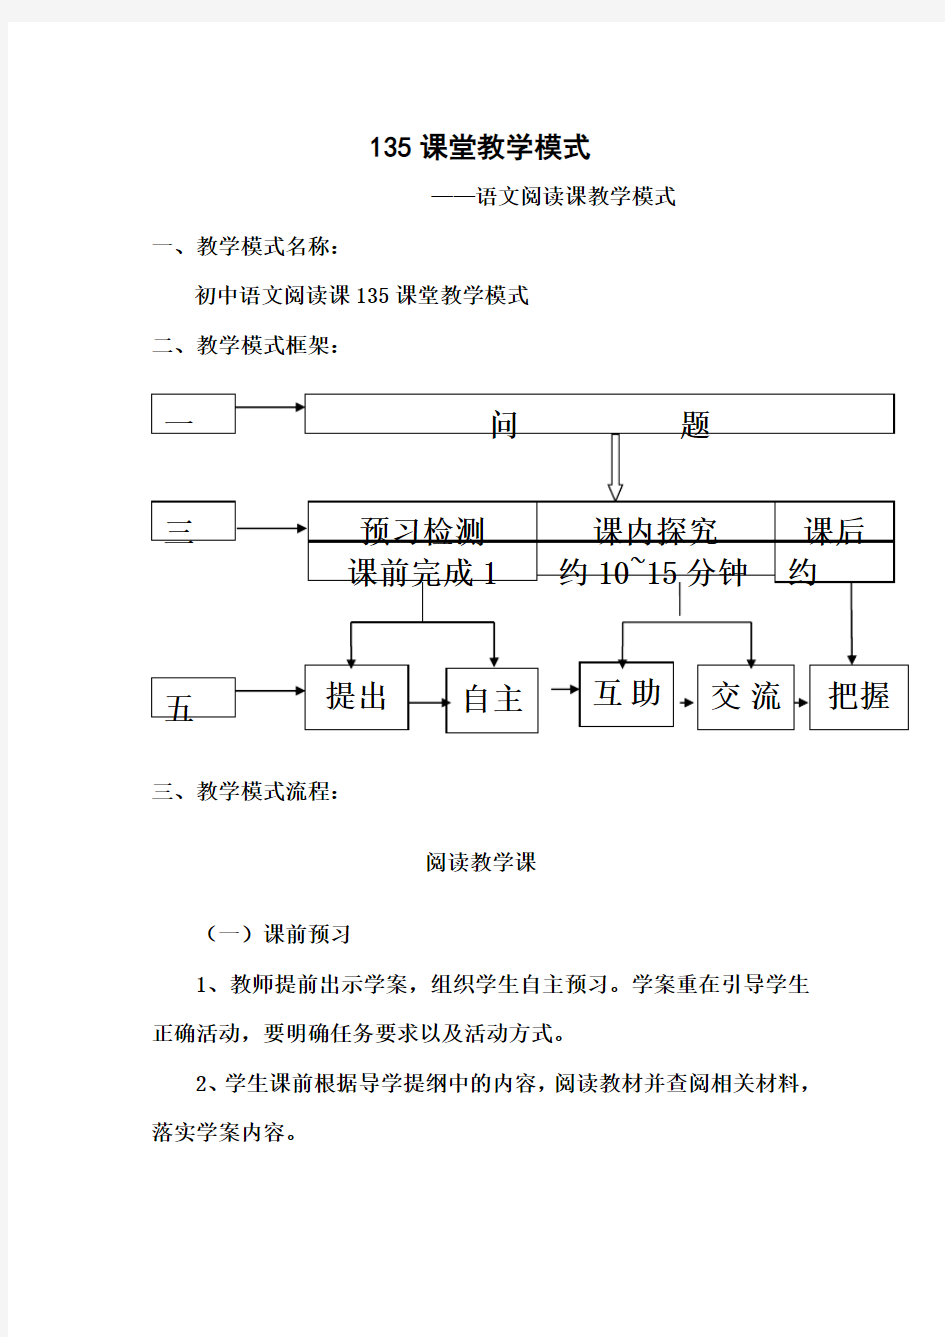 初中语文阅读教学模式及教学设计